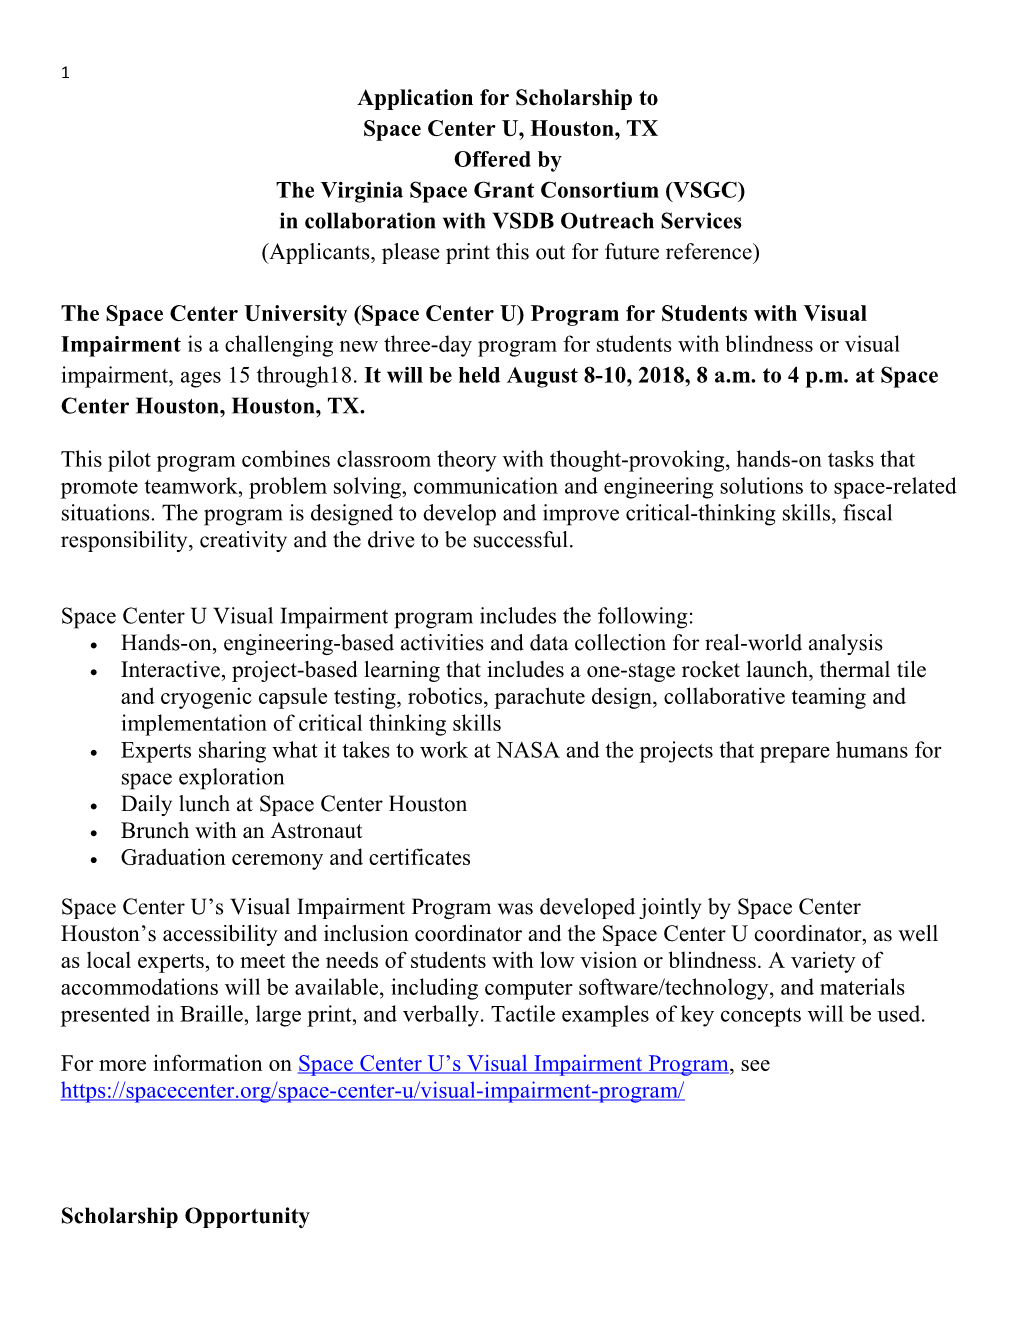 The Virginia Space Grant Consortium(VSGC)